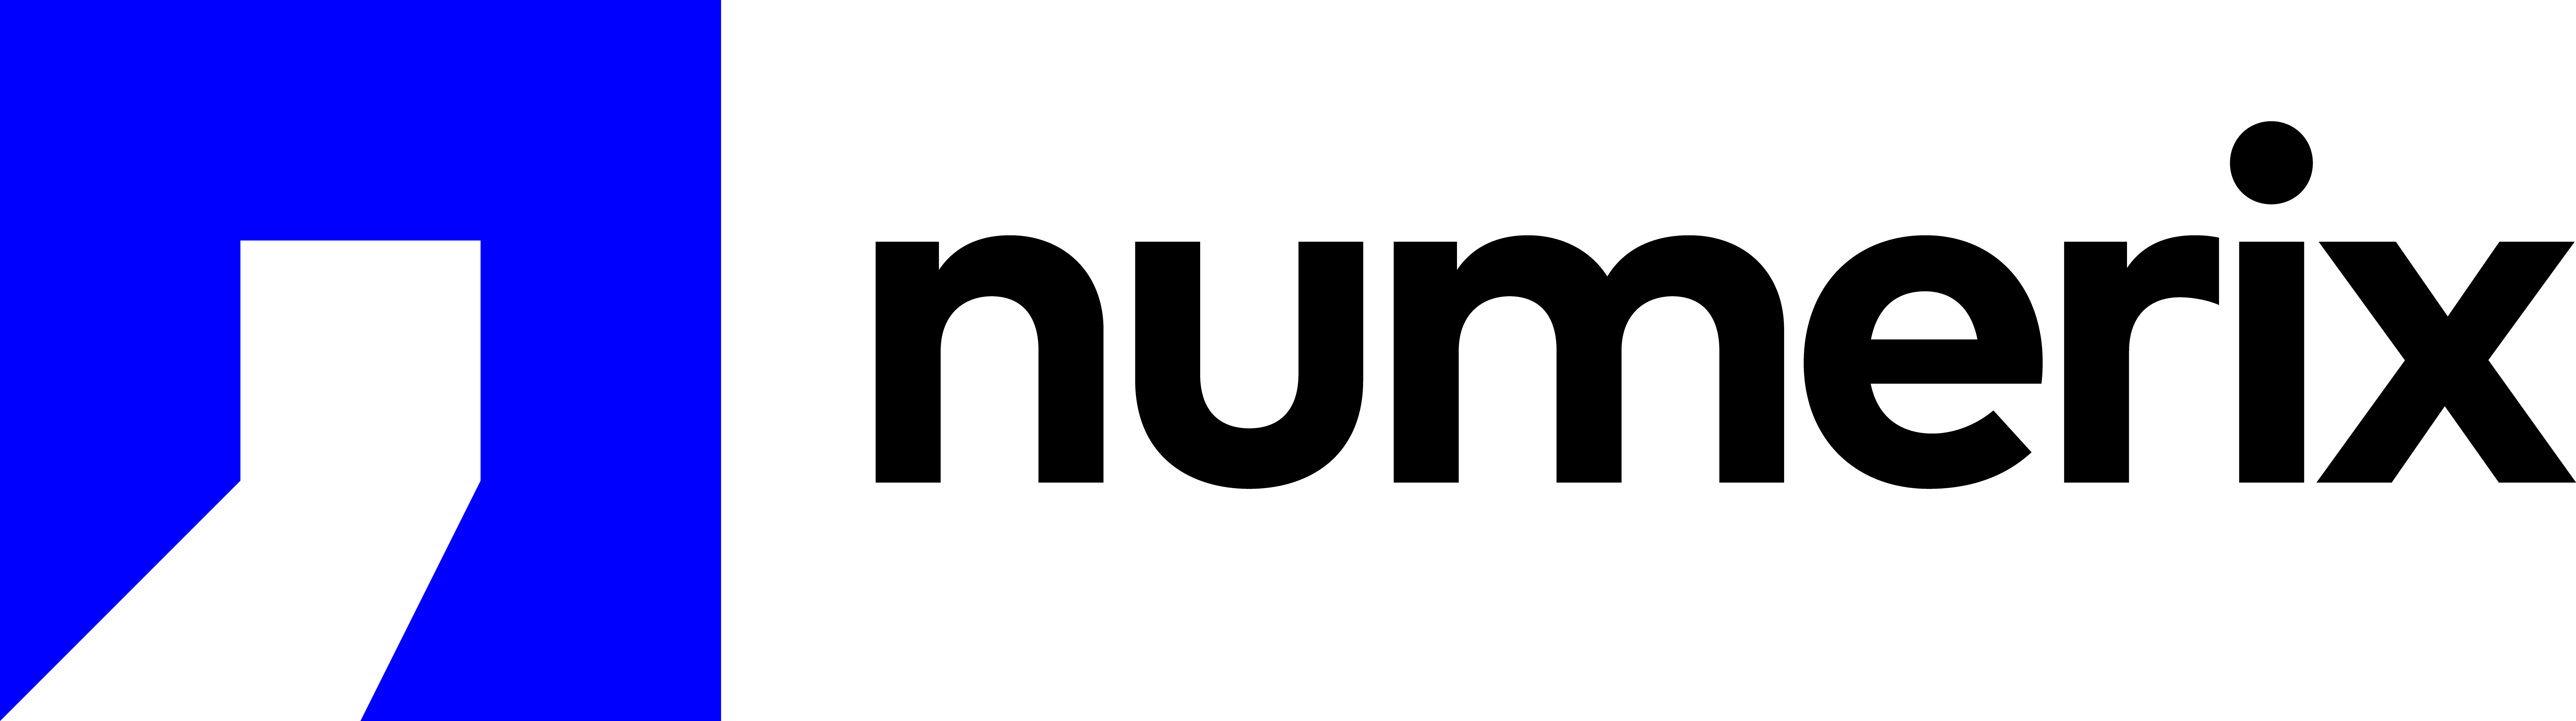 Numerix logo